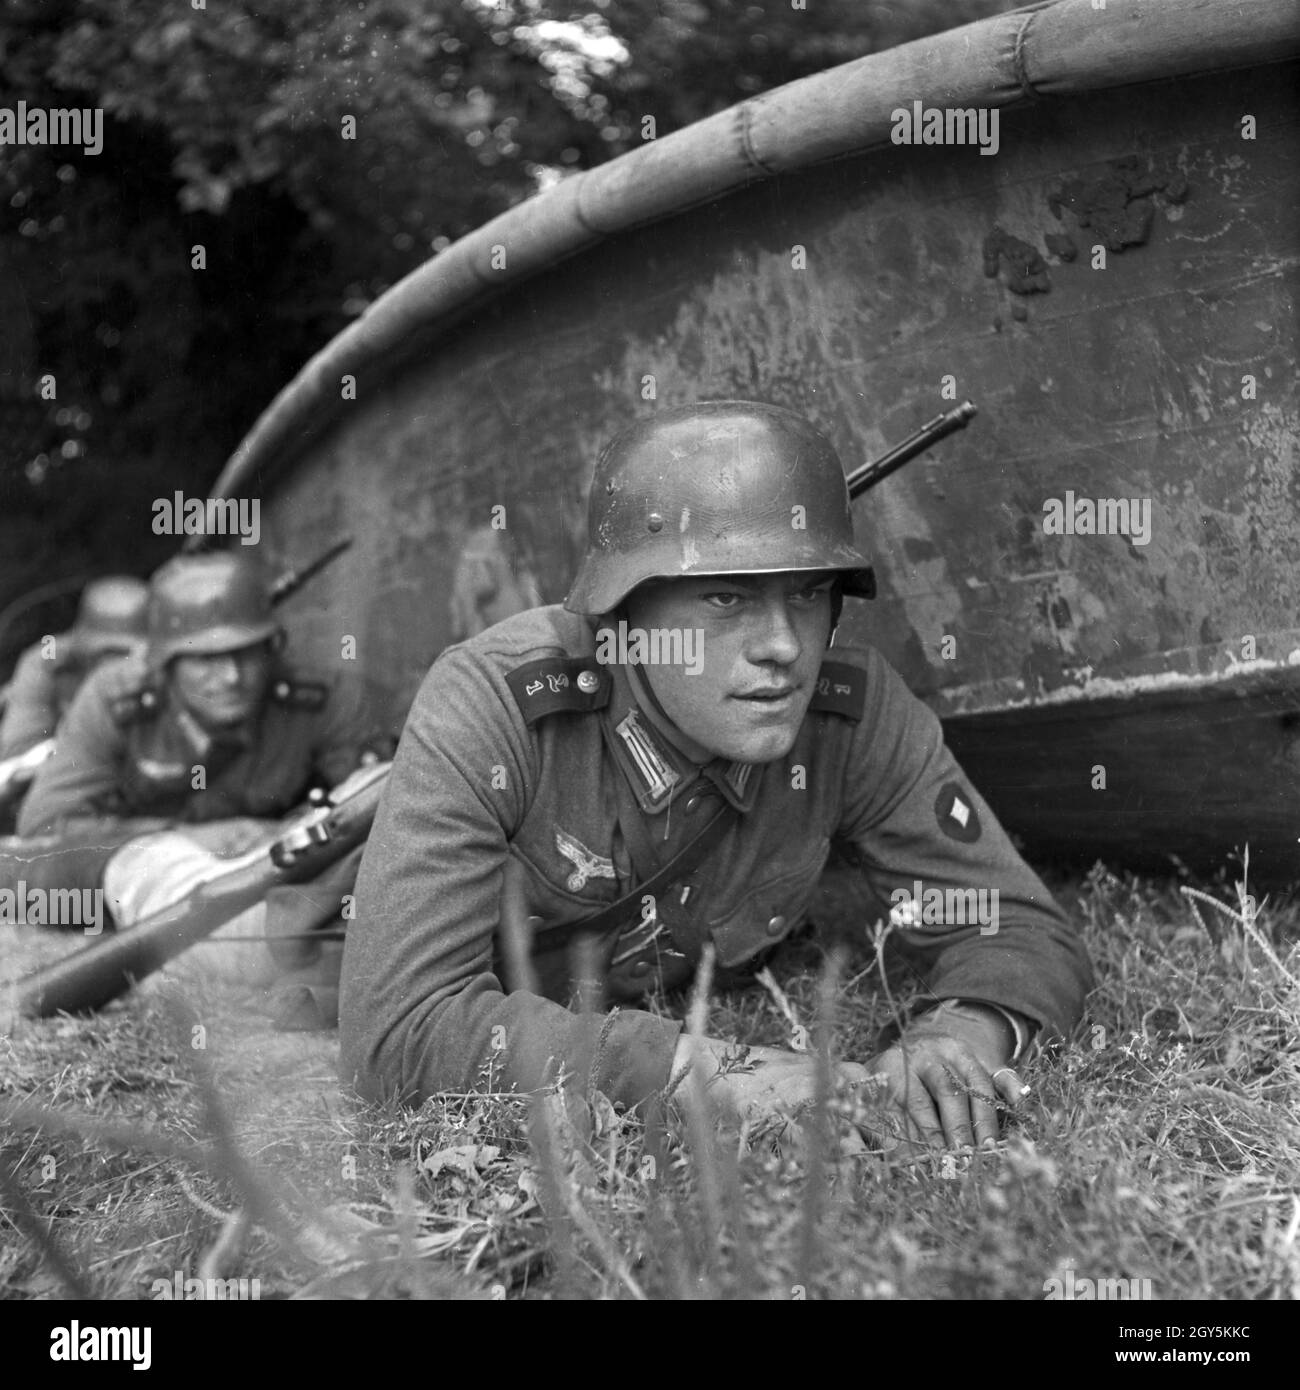 Original-Bildunterschrift: Pionier-Stoßtrupp in Deckung, Deutschland 1940er Jahre. Engineering troops taking cover, Germany 1940s. Stock Photo